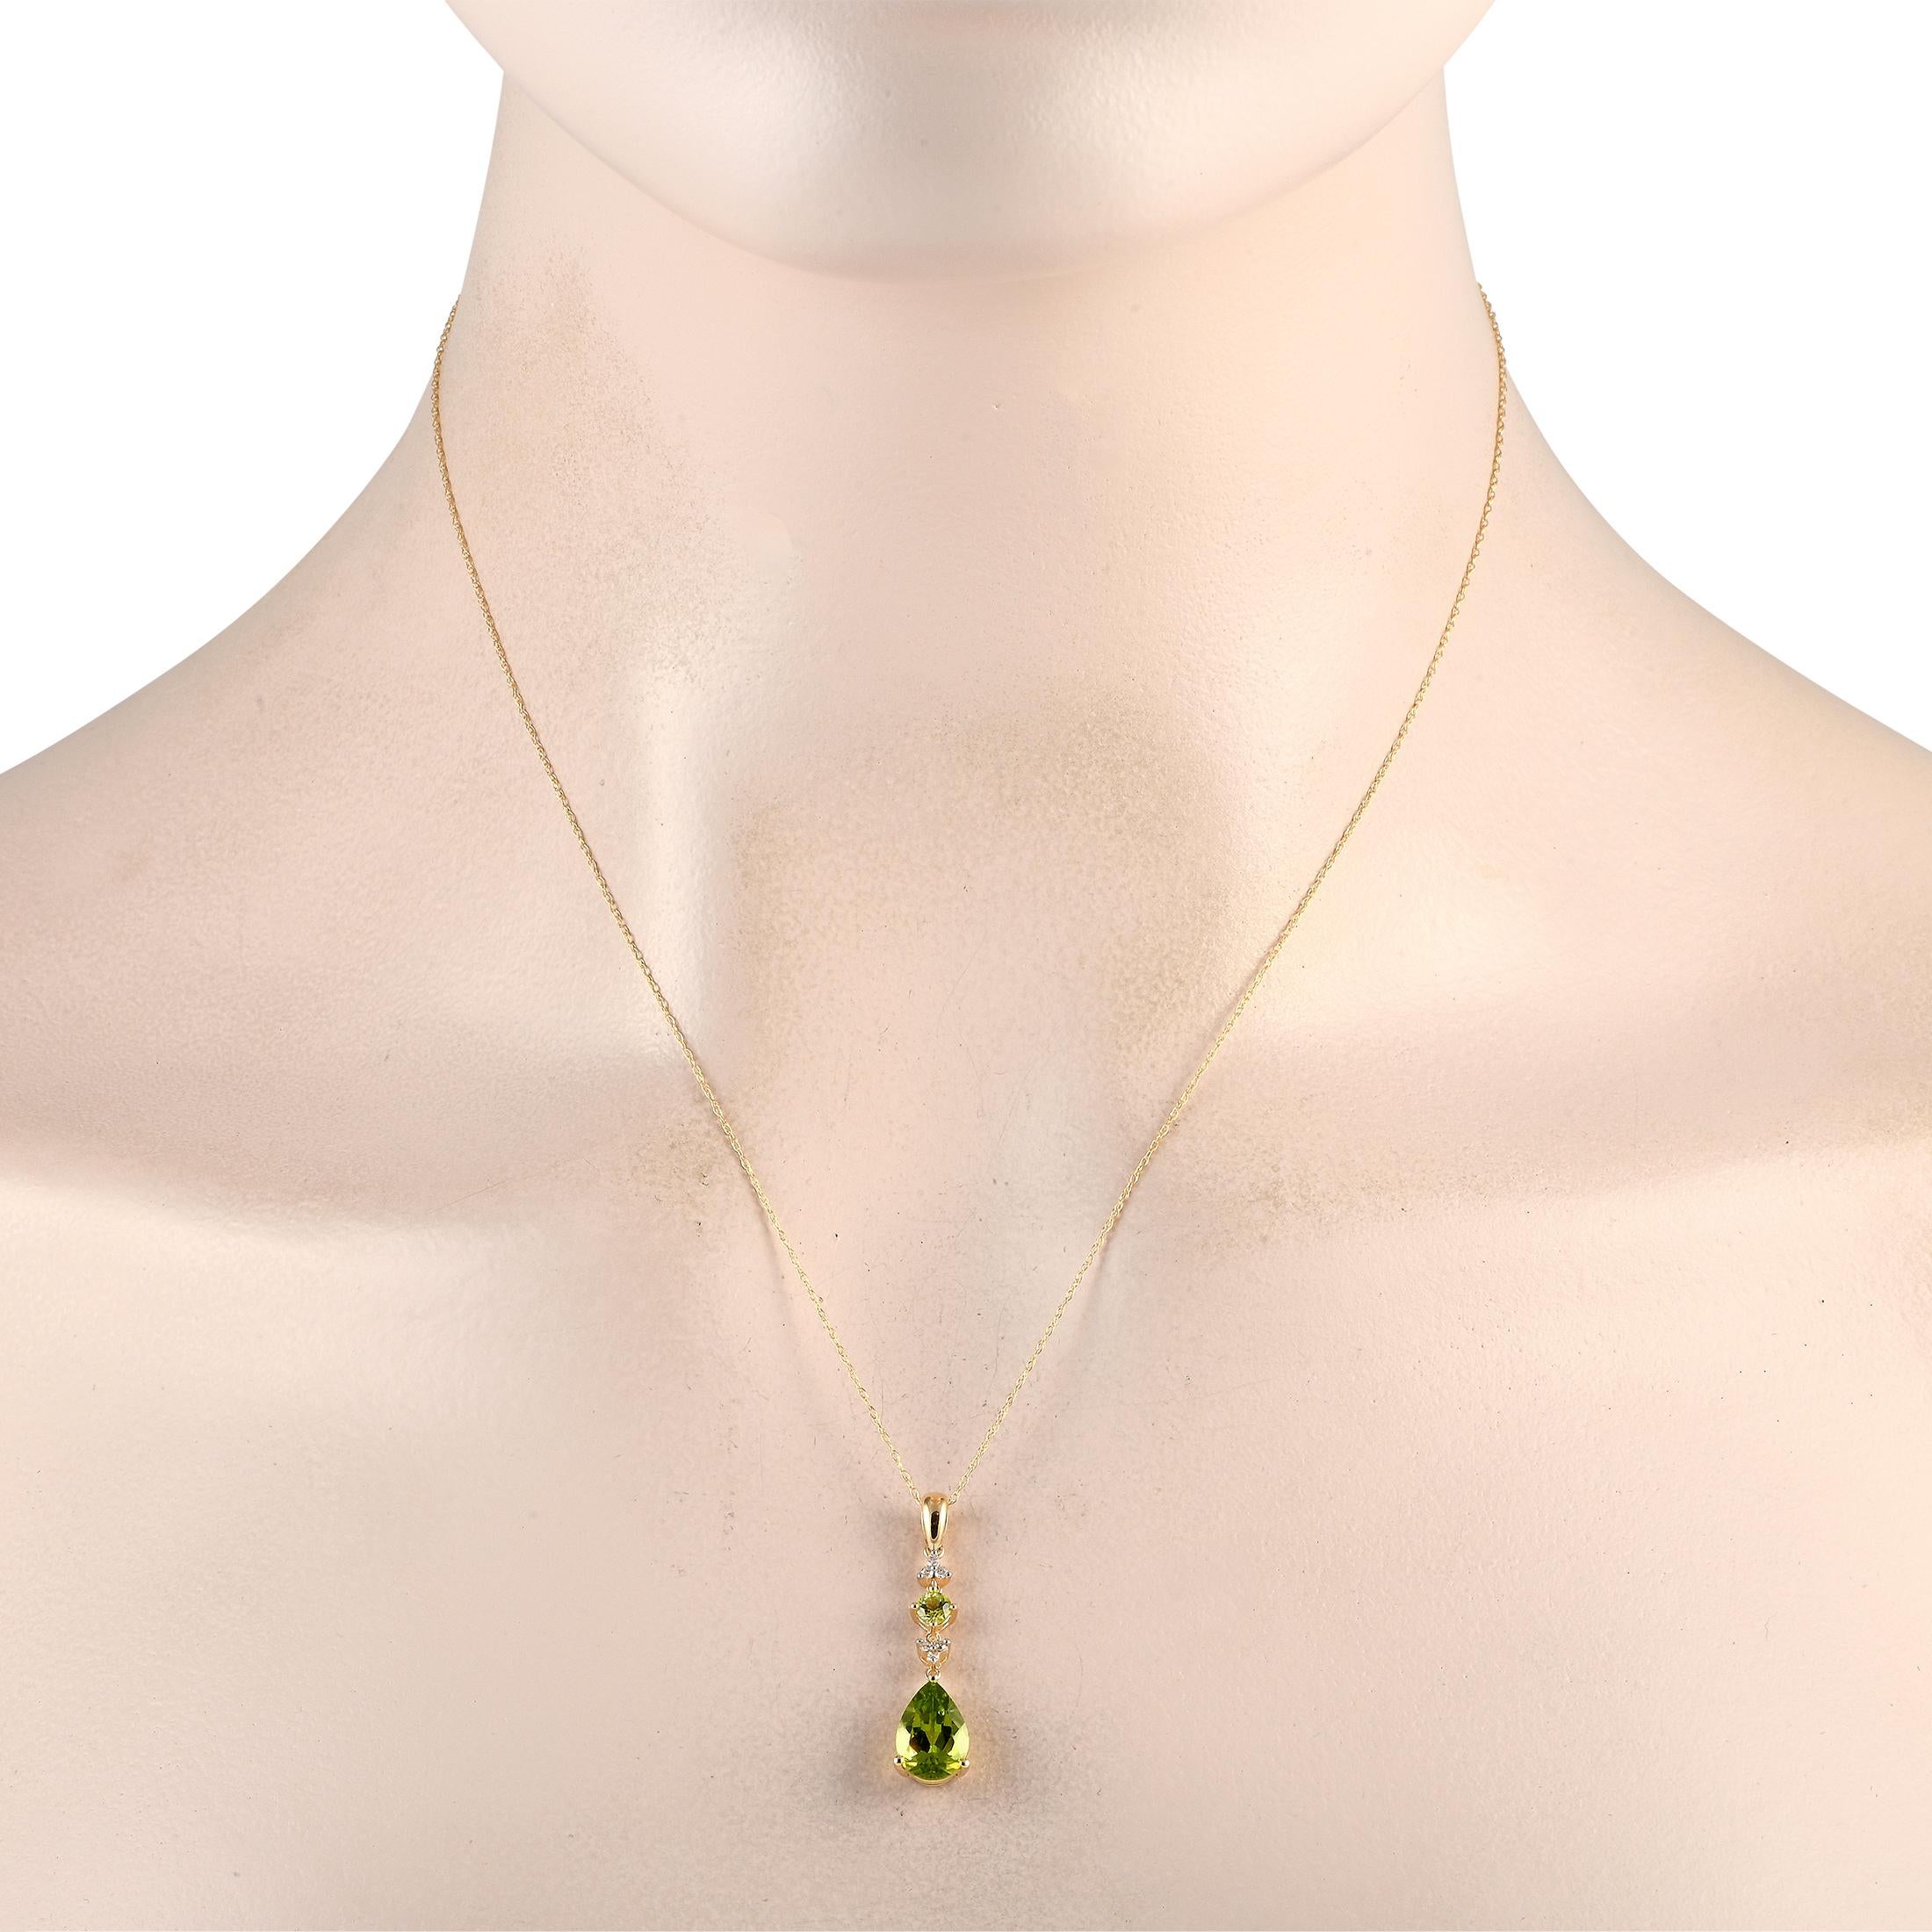 Diese dynamische Halskette wertet jedes Ensemble auf. Leuchtend grüne Peridot-Edelsteine verleihen diesem raffinierten Accessoire einen Farbtupfer, während Diamanten von insgesamt 0,05 Karat für zusätzlichen Glanz sorgen. Der 14K Gelbgold Anhänger